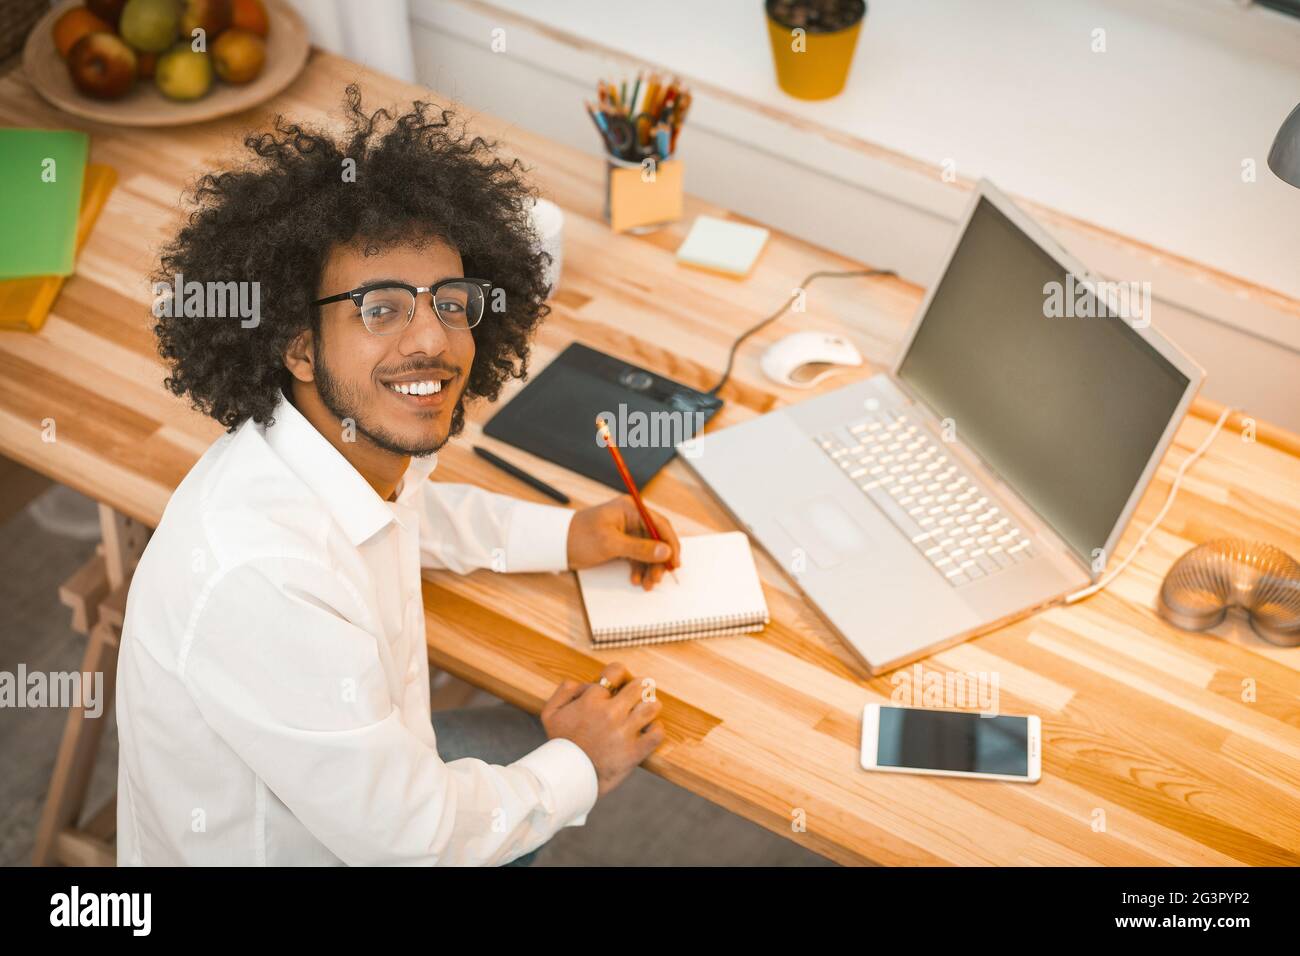 Intellectual Millennial schreibt in einem Notizbuch, das die Kamera anschaut, während er am Arbeitsplatz in einem gemütlichen, gemütlichen Interieur sitzt. Copywrite Stockfoto